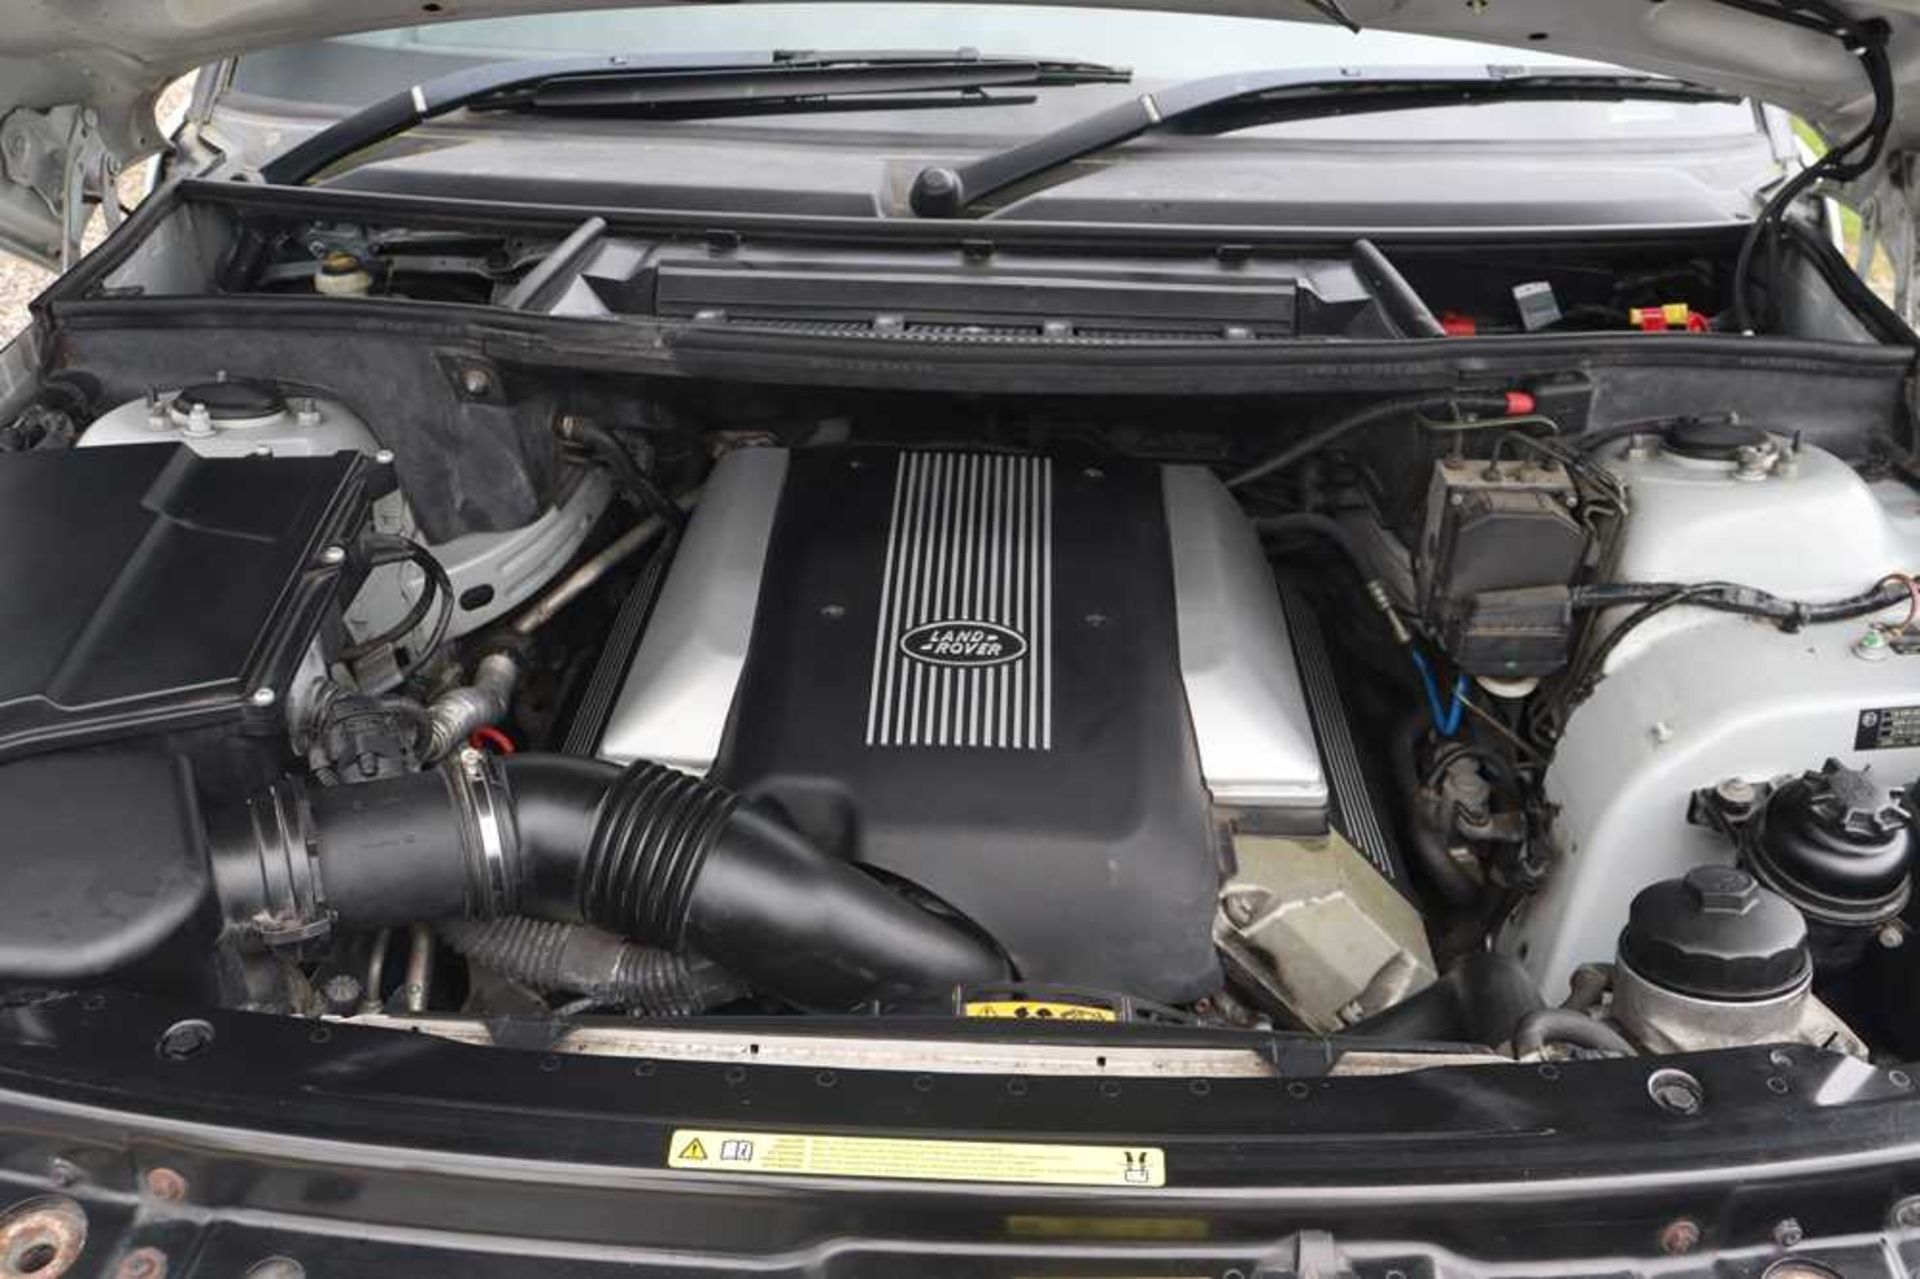 2002 Range Rover Vogue V8 - Image 38 of 53